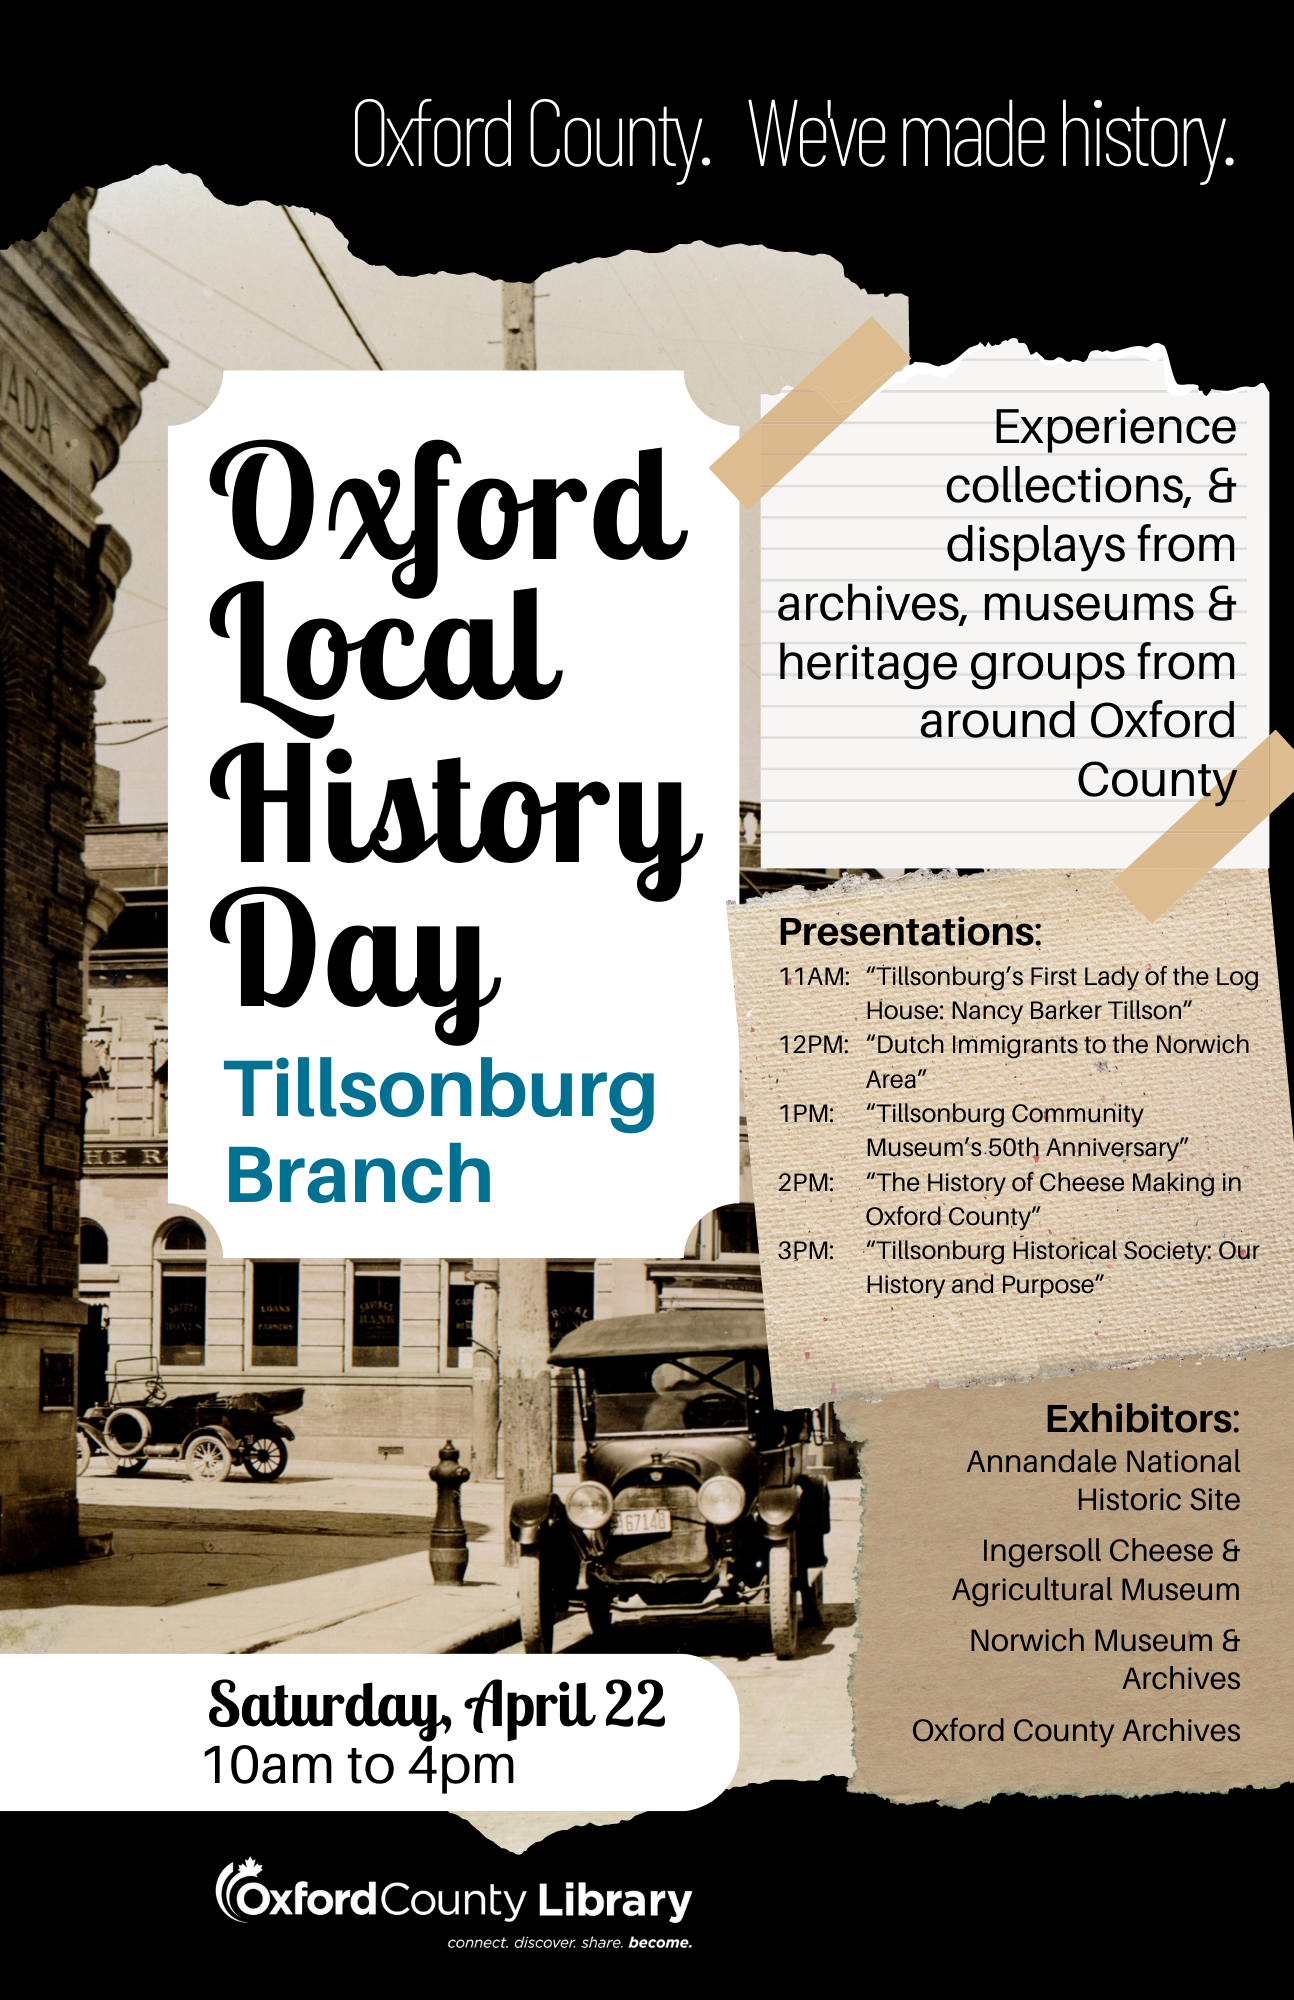 Oxford Local History Day poster for Tillsonburg